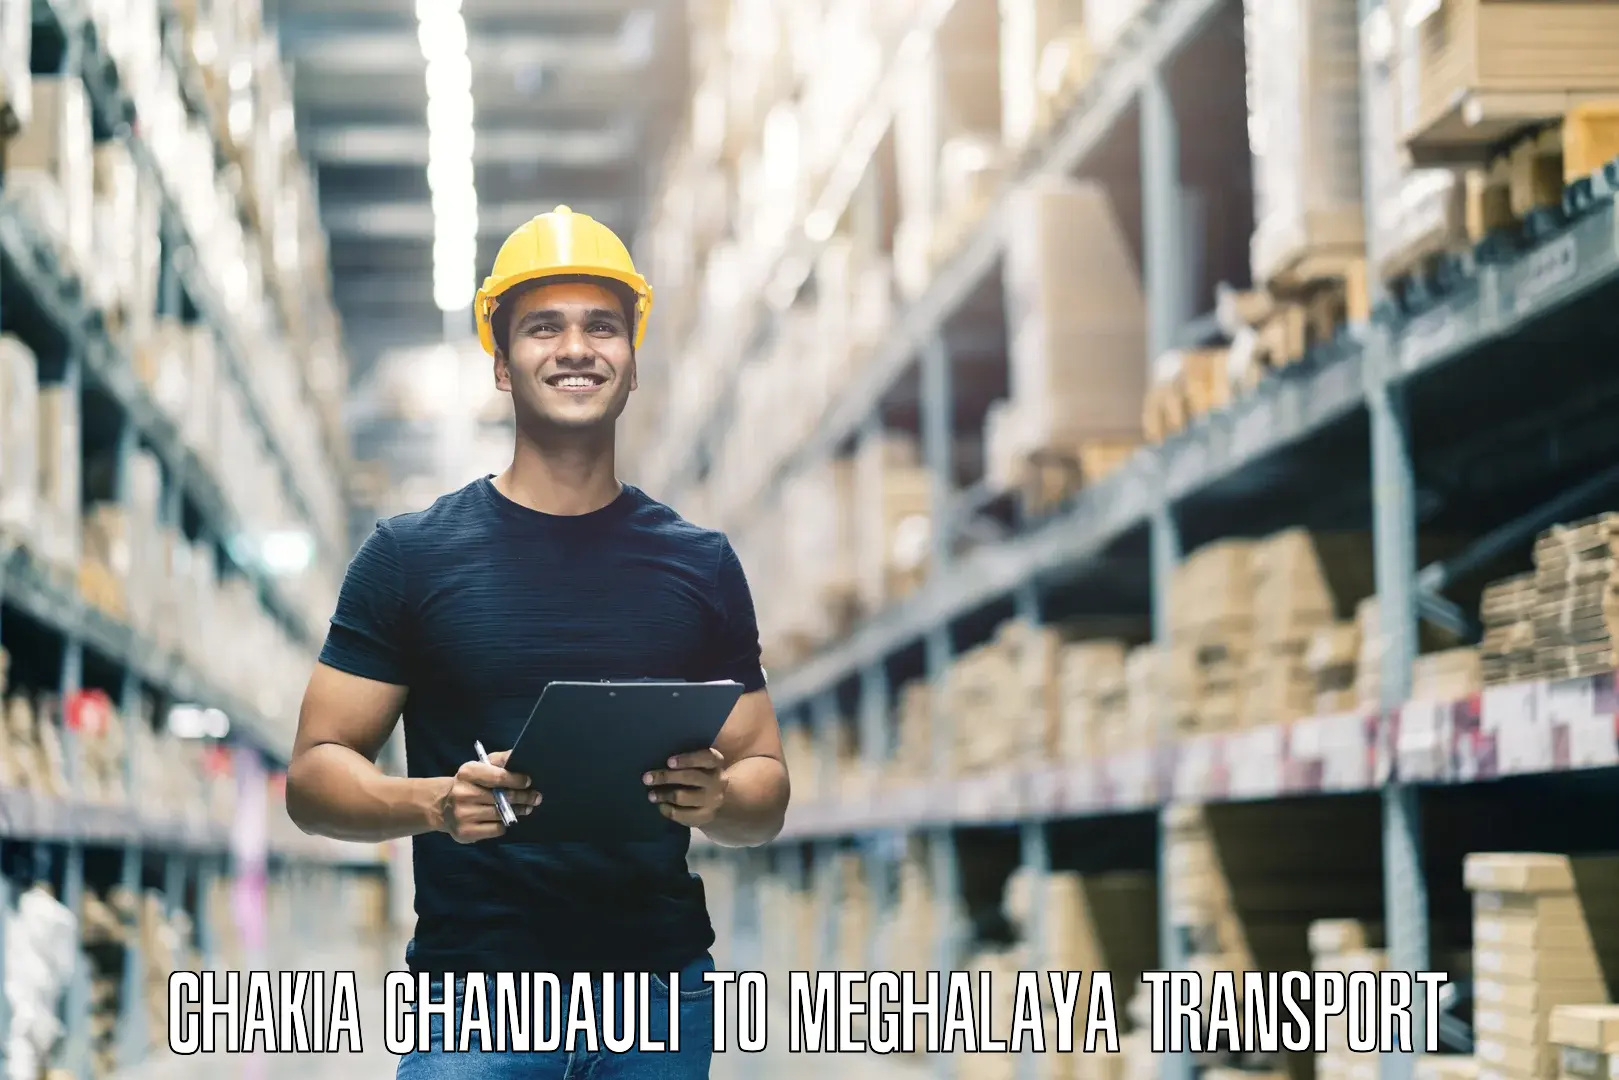 Logistics transportation services Chakia Chandauli to Meghalaya